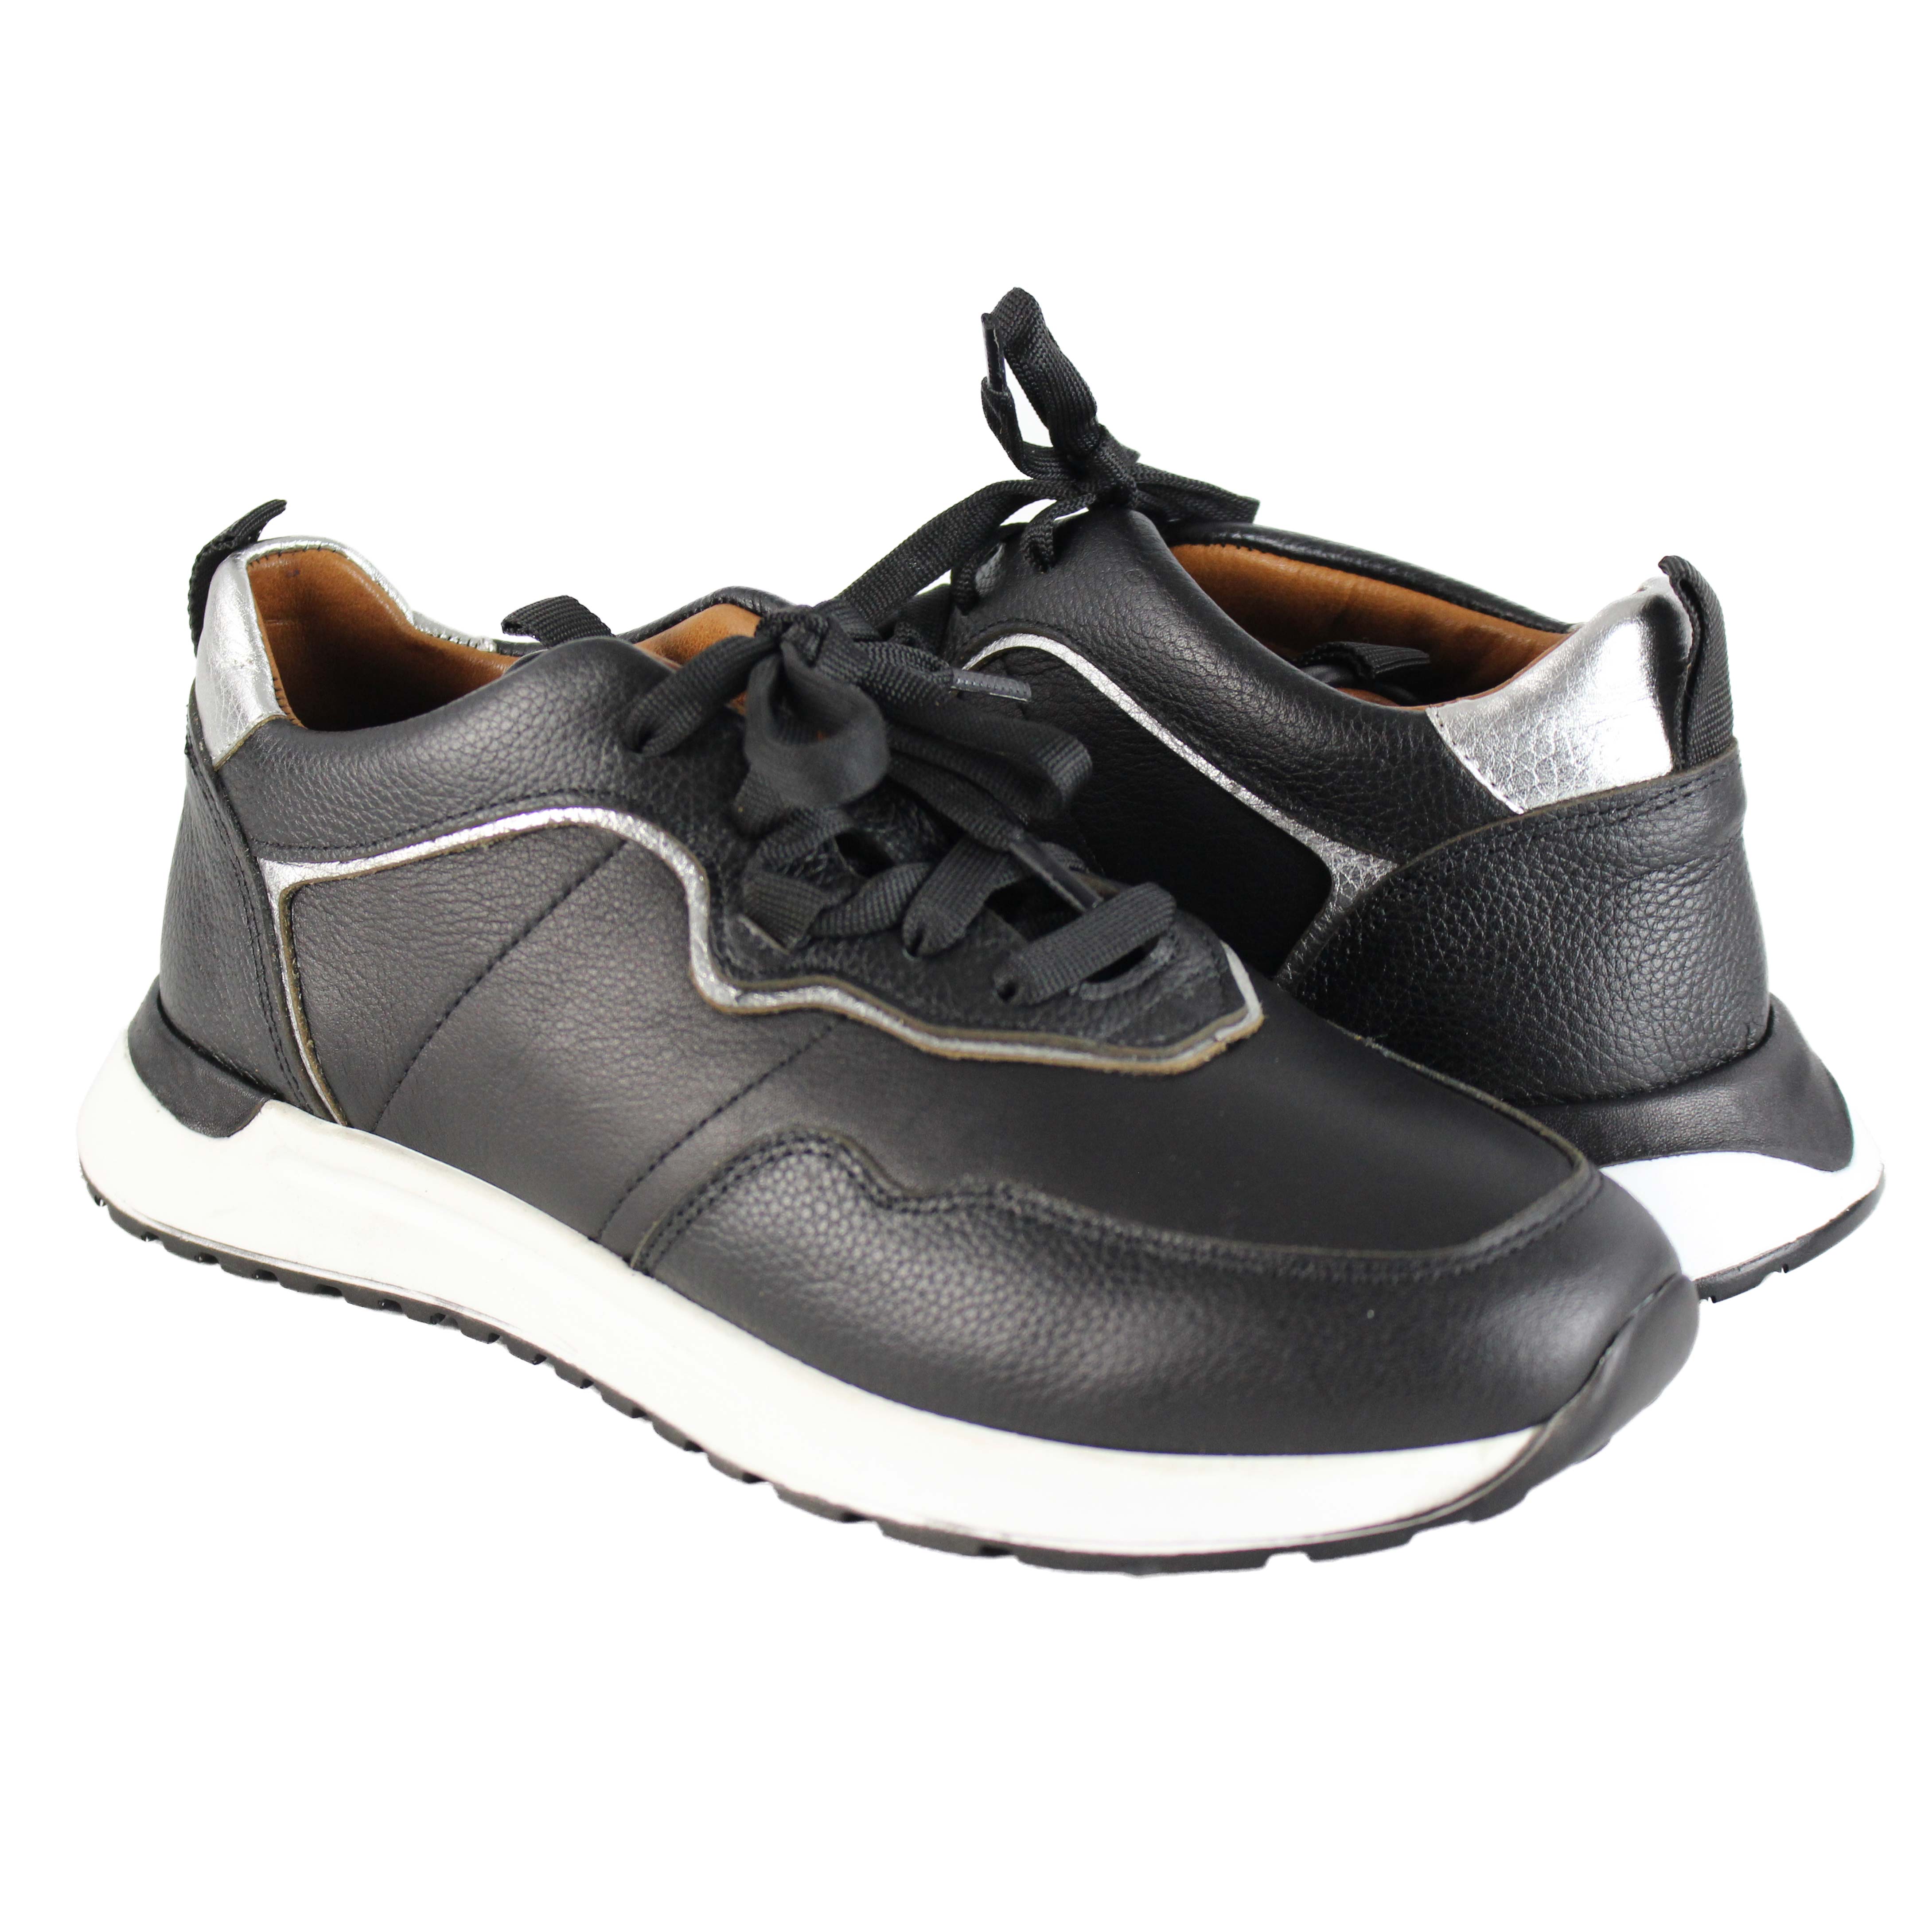 Zapatos Sneaker Deportivos Zerimar 20320412 - Zapatillas Mujer  MKP